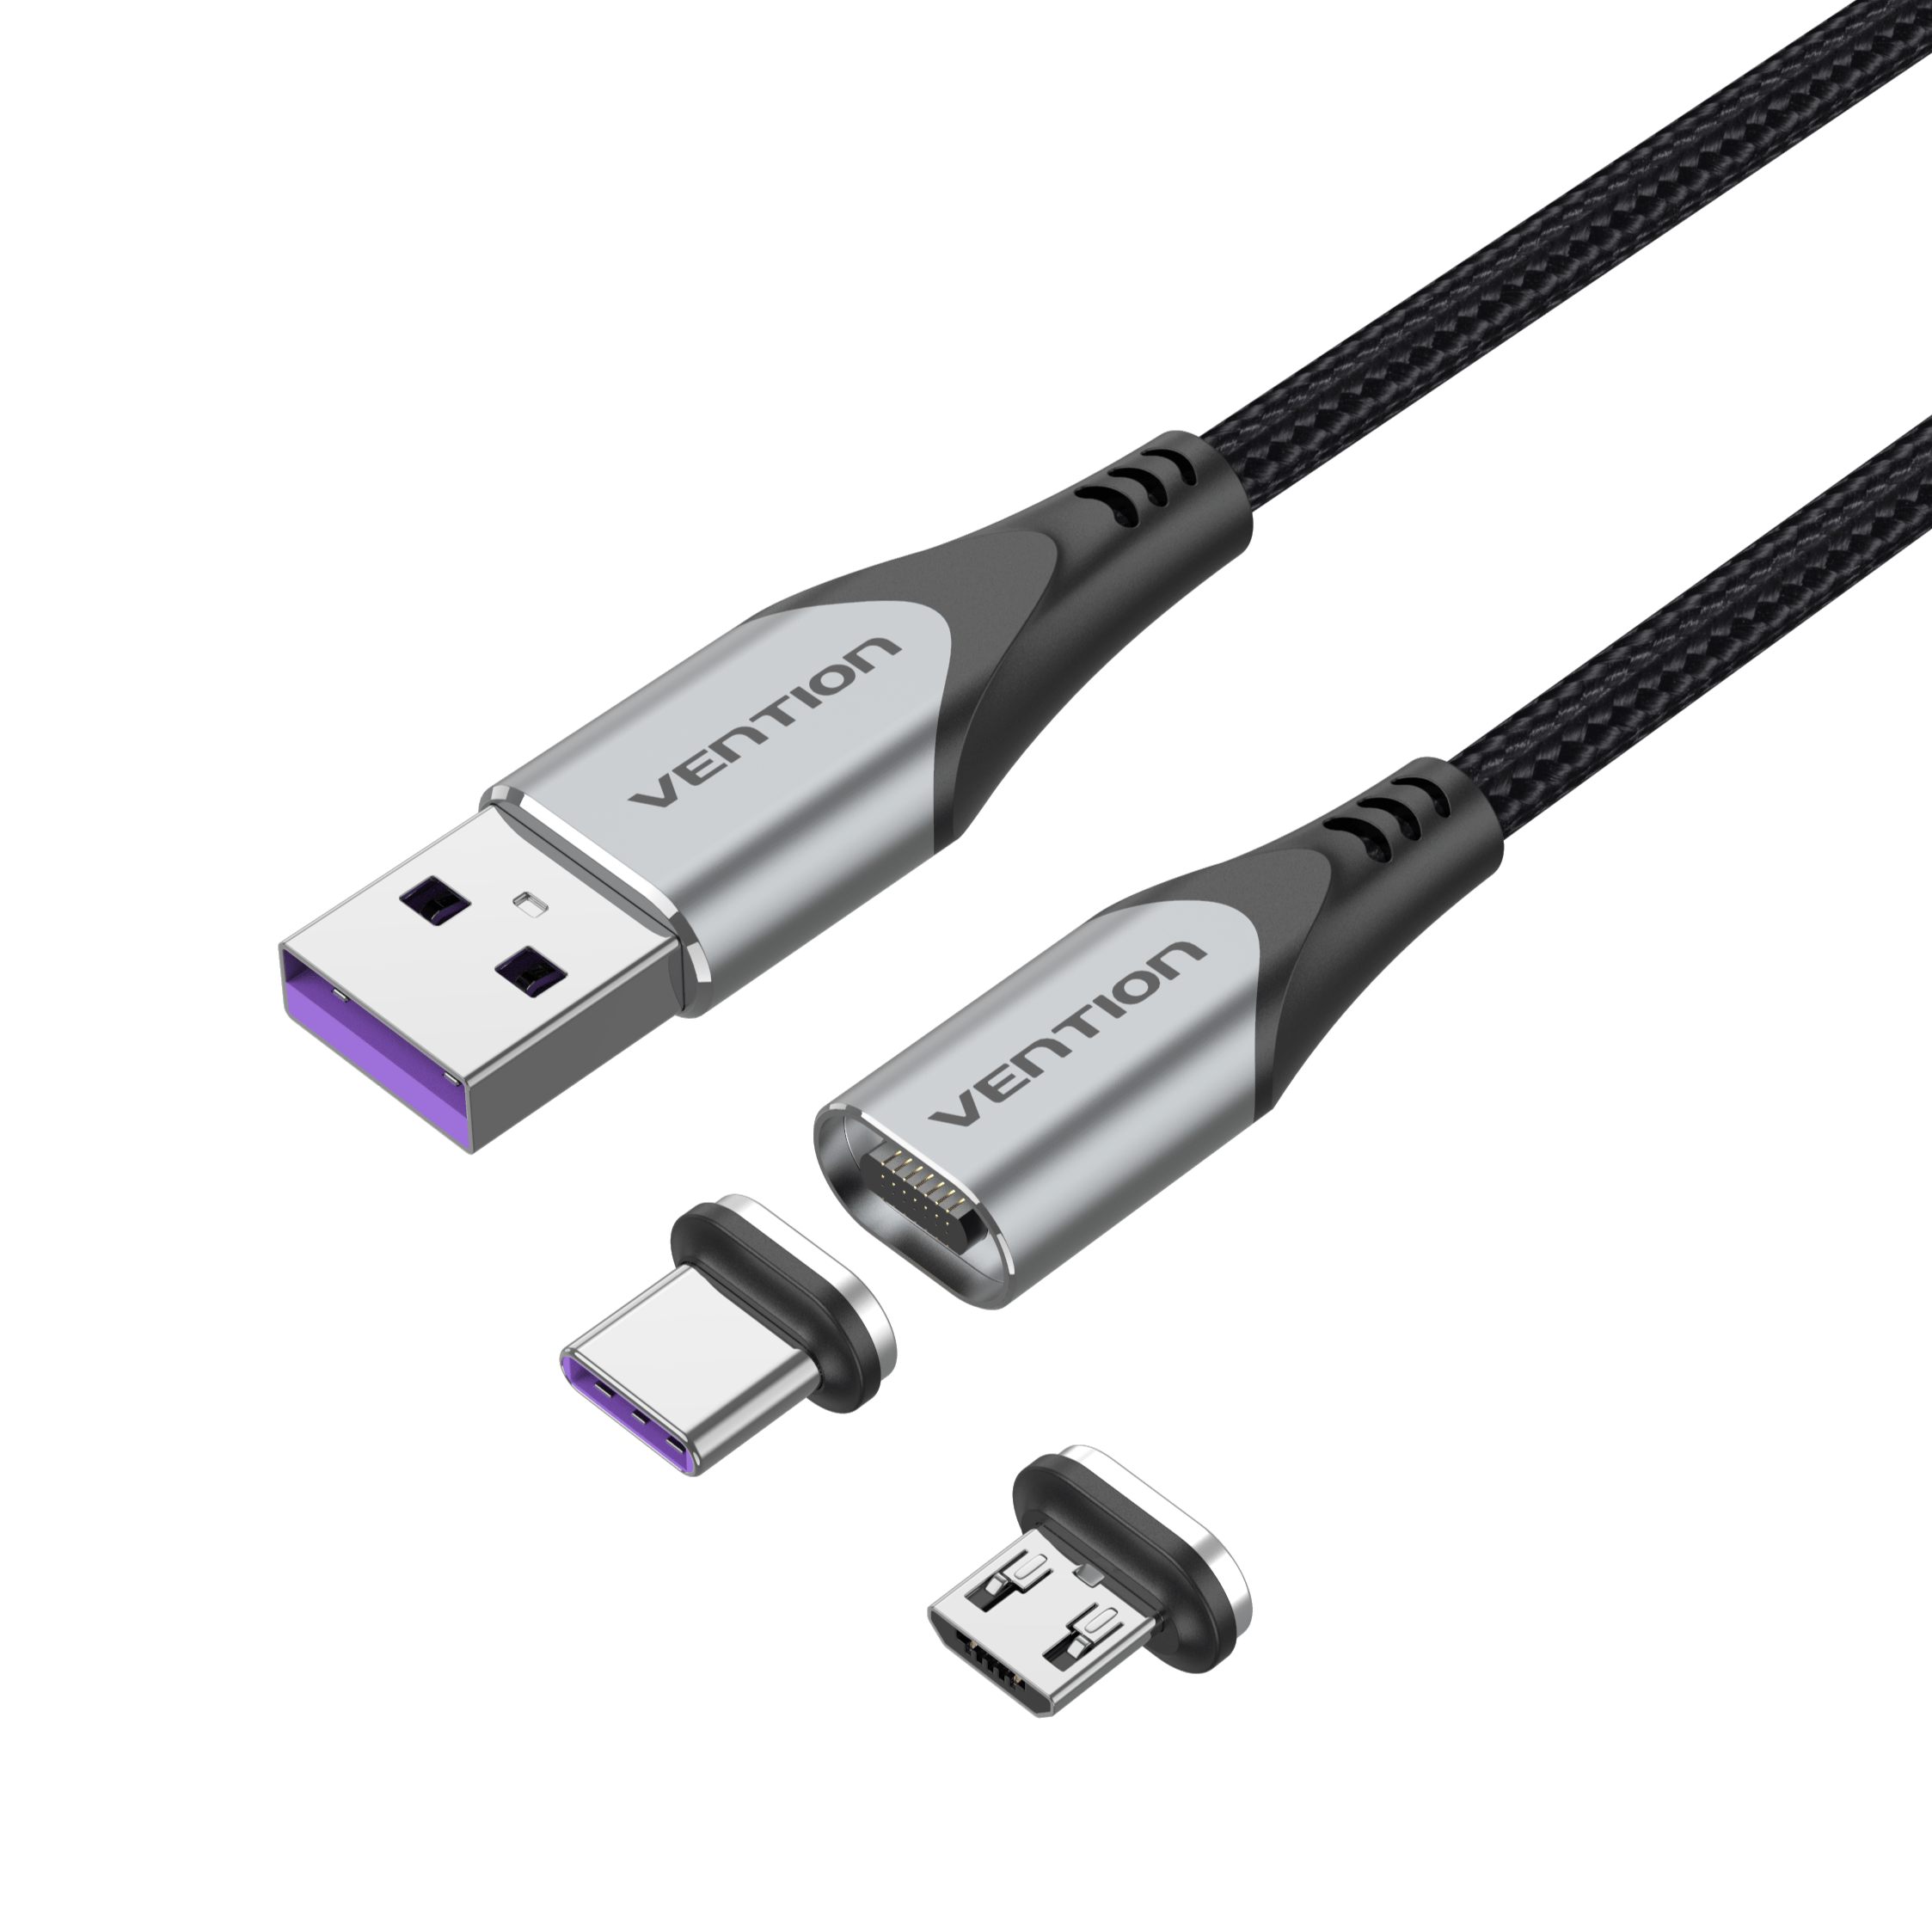 Cable de carga magnética 5A Cable de carga rápida USB tipo C Cable mag